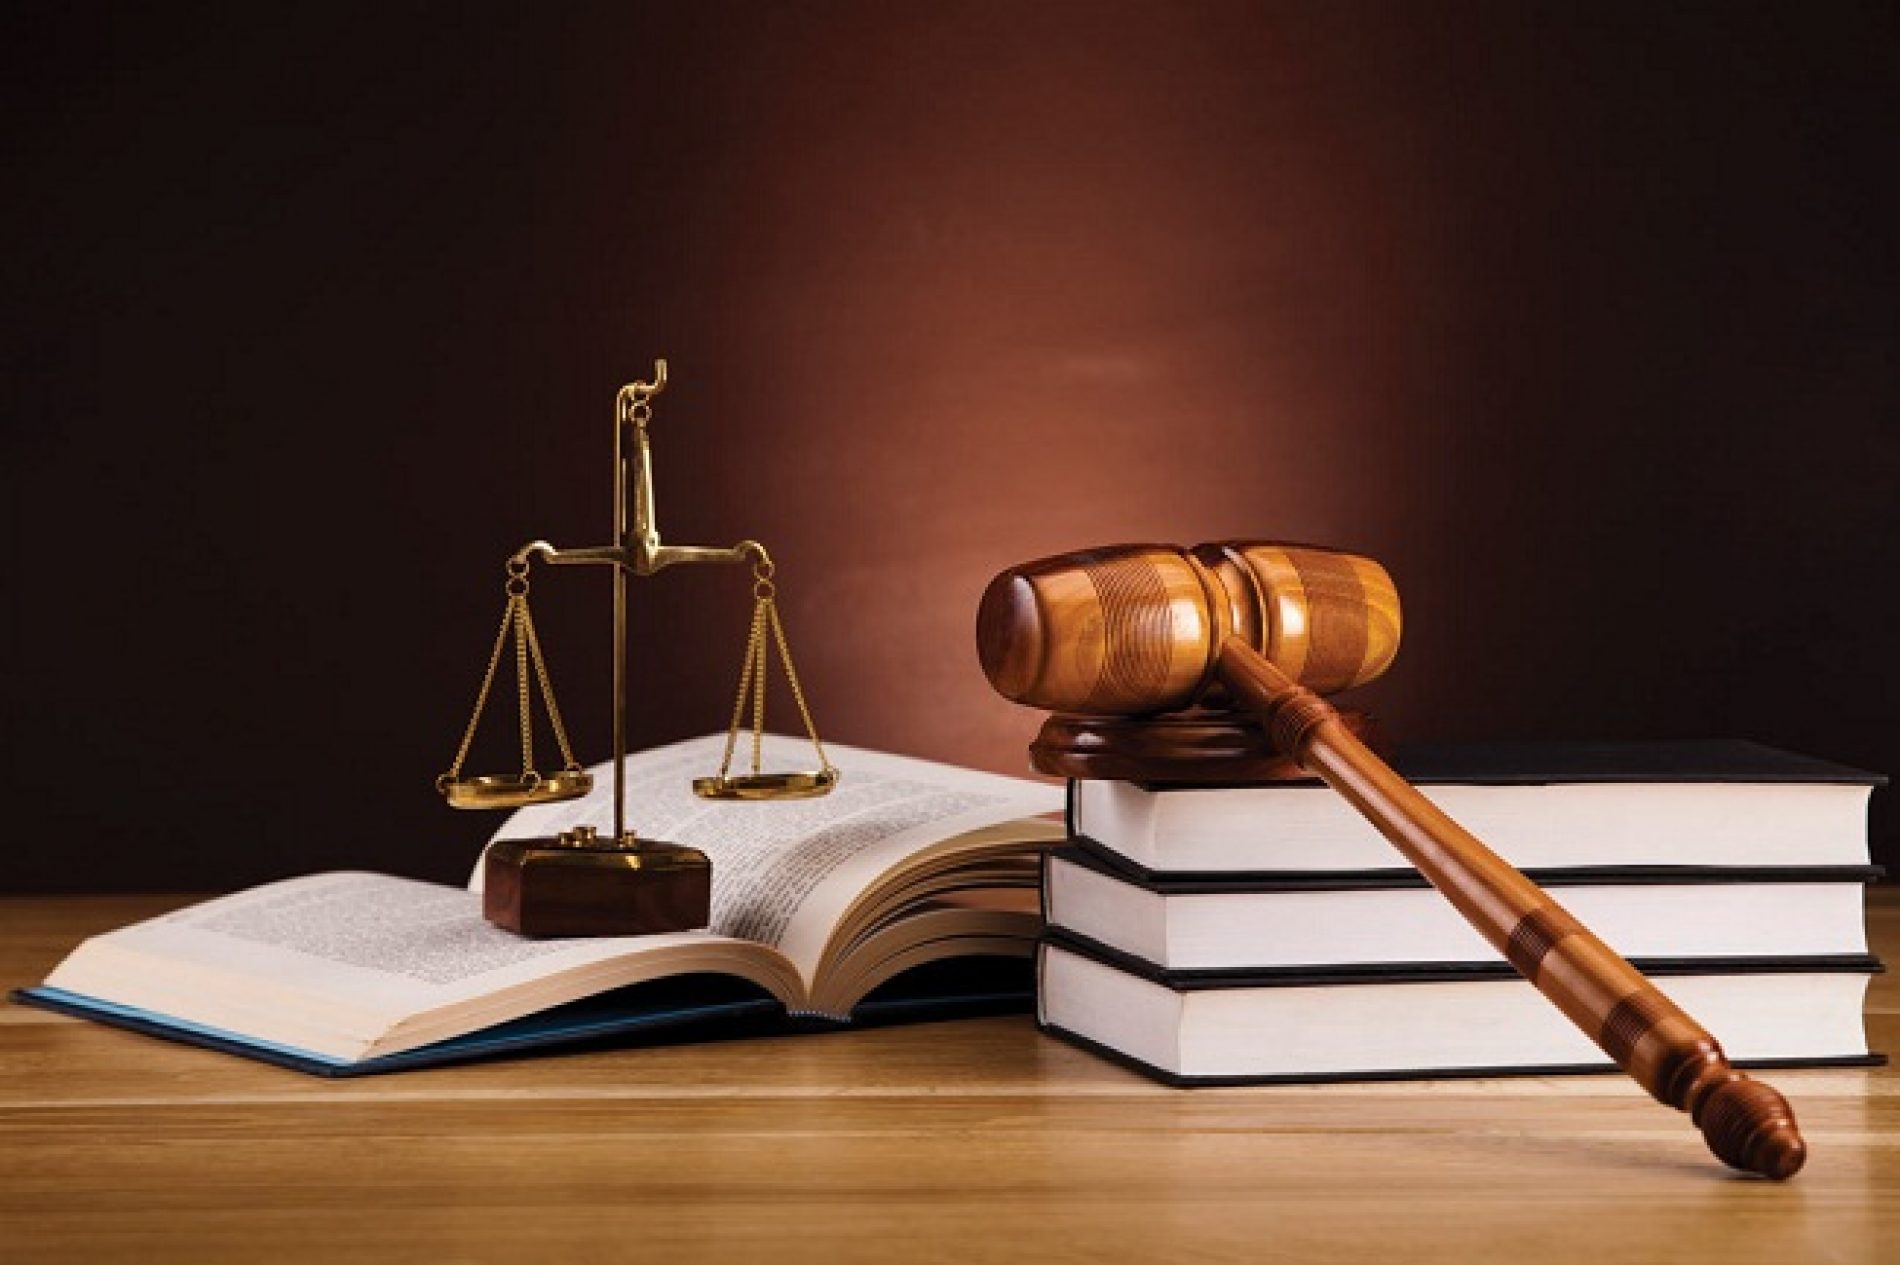 Hồ sơ vụ việc trợ giúp pháp lý bao gồm những gì?